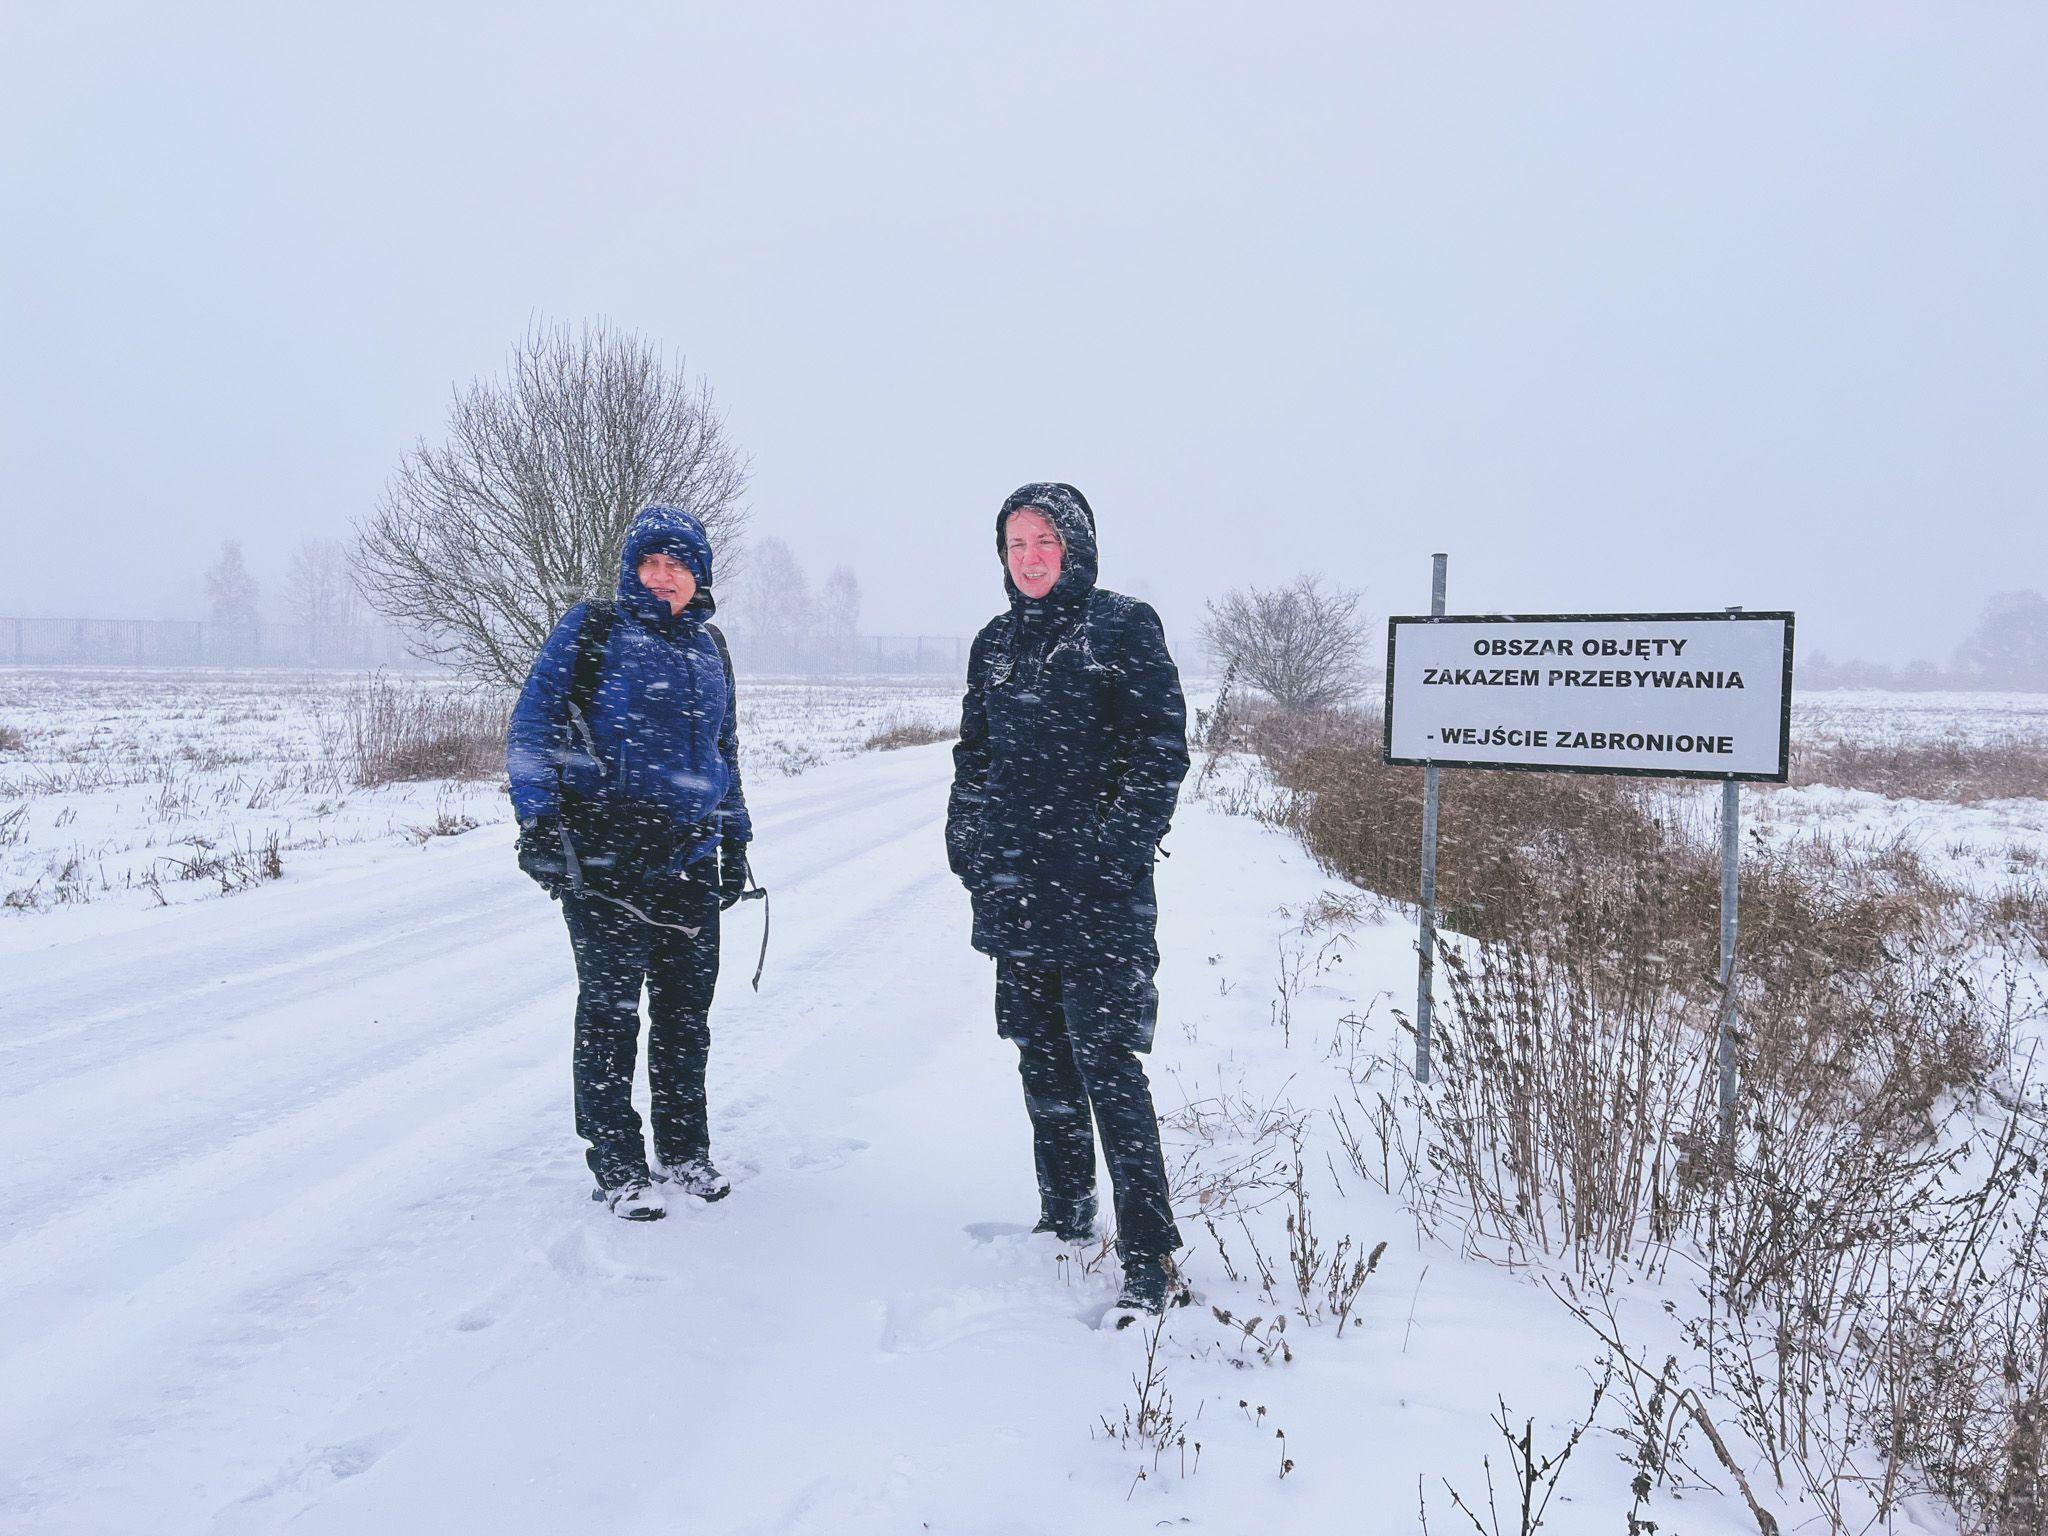 Marta și Regina, lângă semnul care indică faptul că te afli la 200 de metri de Belarus și, dincolo de el, e interzis să pășești